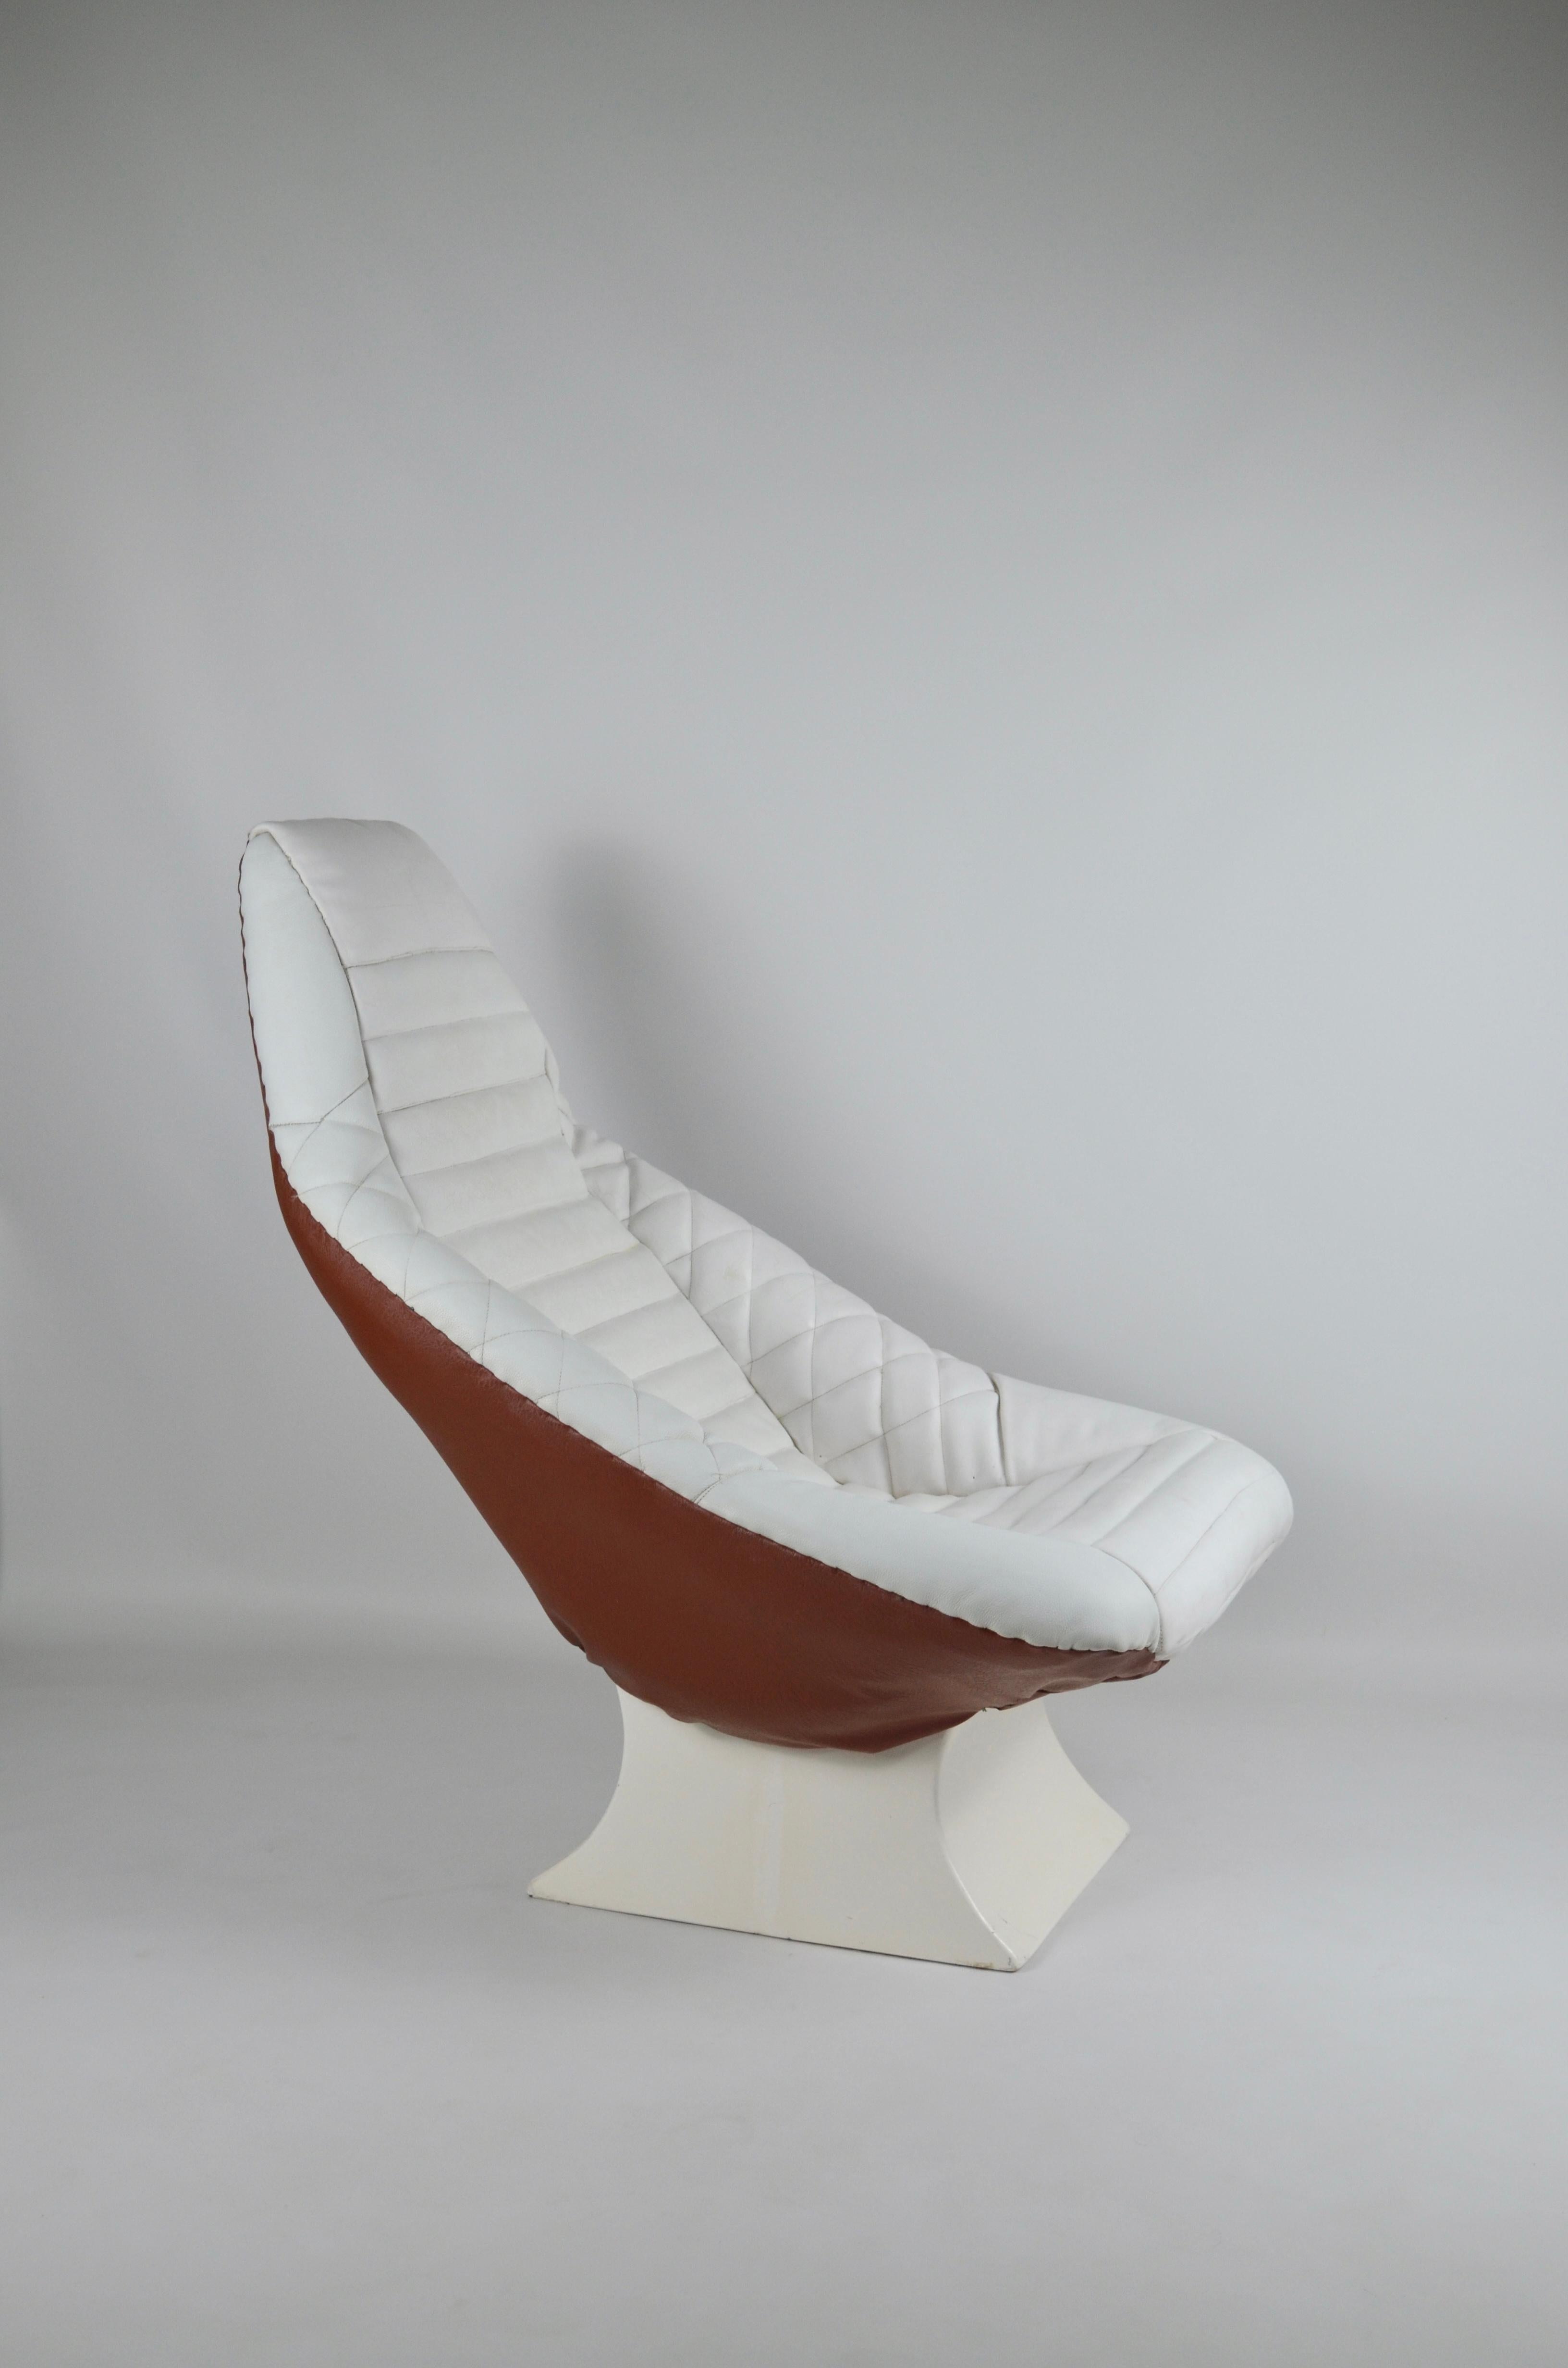 Vintage Space Age Sessel, Italien, 1970er Jahre
Der obere Teil ist aus weißem und der untere Teil aus braunem Leder gefertigt.
Der Sockel ist aus Glasfaser.
Einige Patina und Gebrauchsspuren auf dem weißen Leder des Sitzes